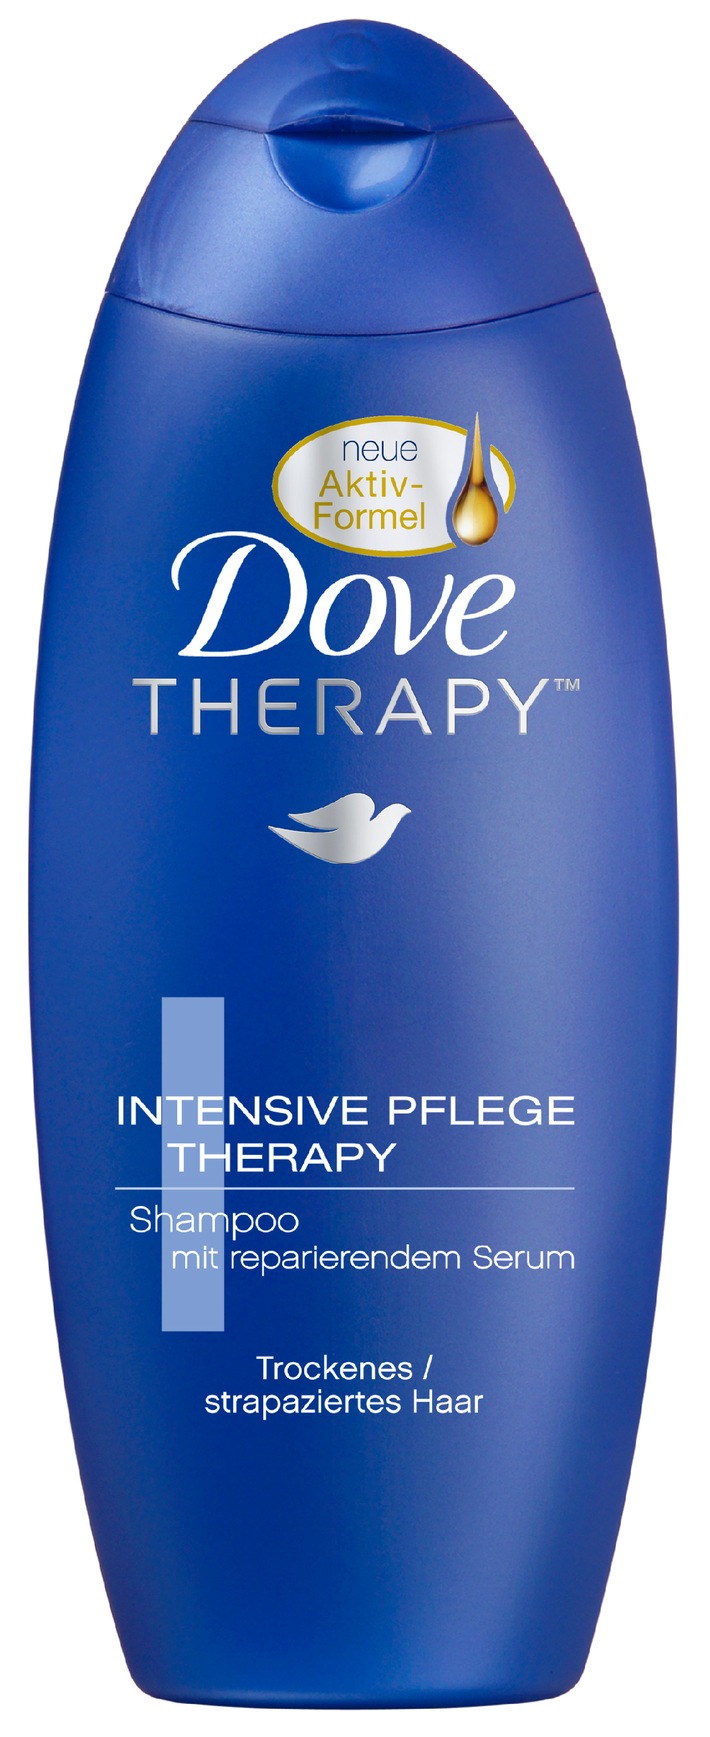 Testsieger Dove überzeugt bei Stiftung Warentest (mit Bild) / Das Dove Intensive Pflege Therapy Shampoo erhält das Qualitätsurteil GUT (1,9)